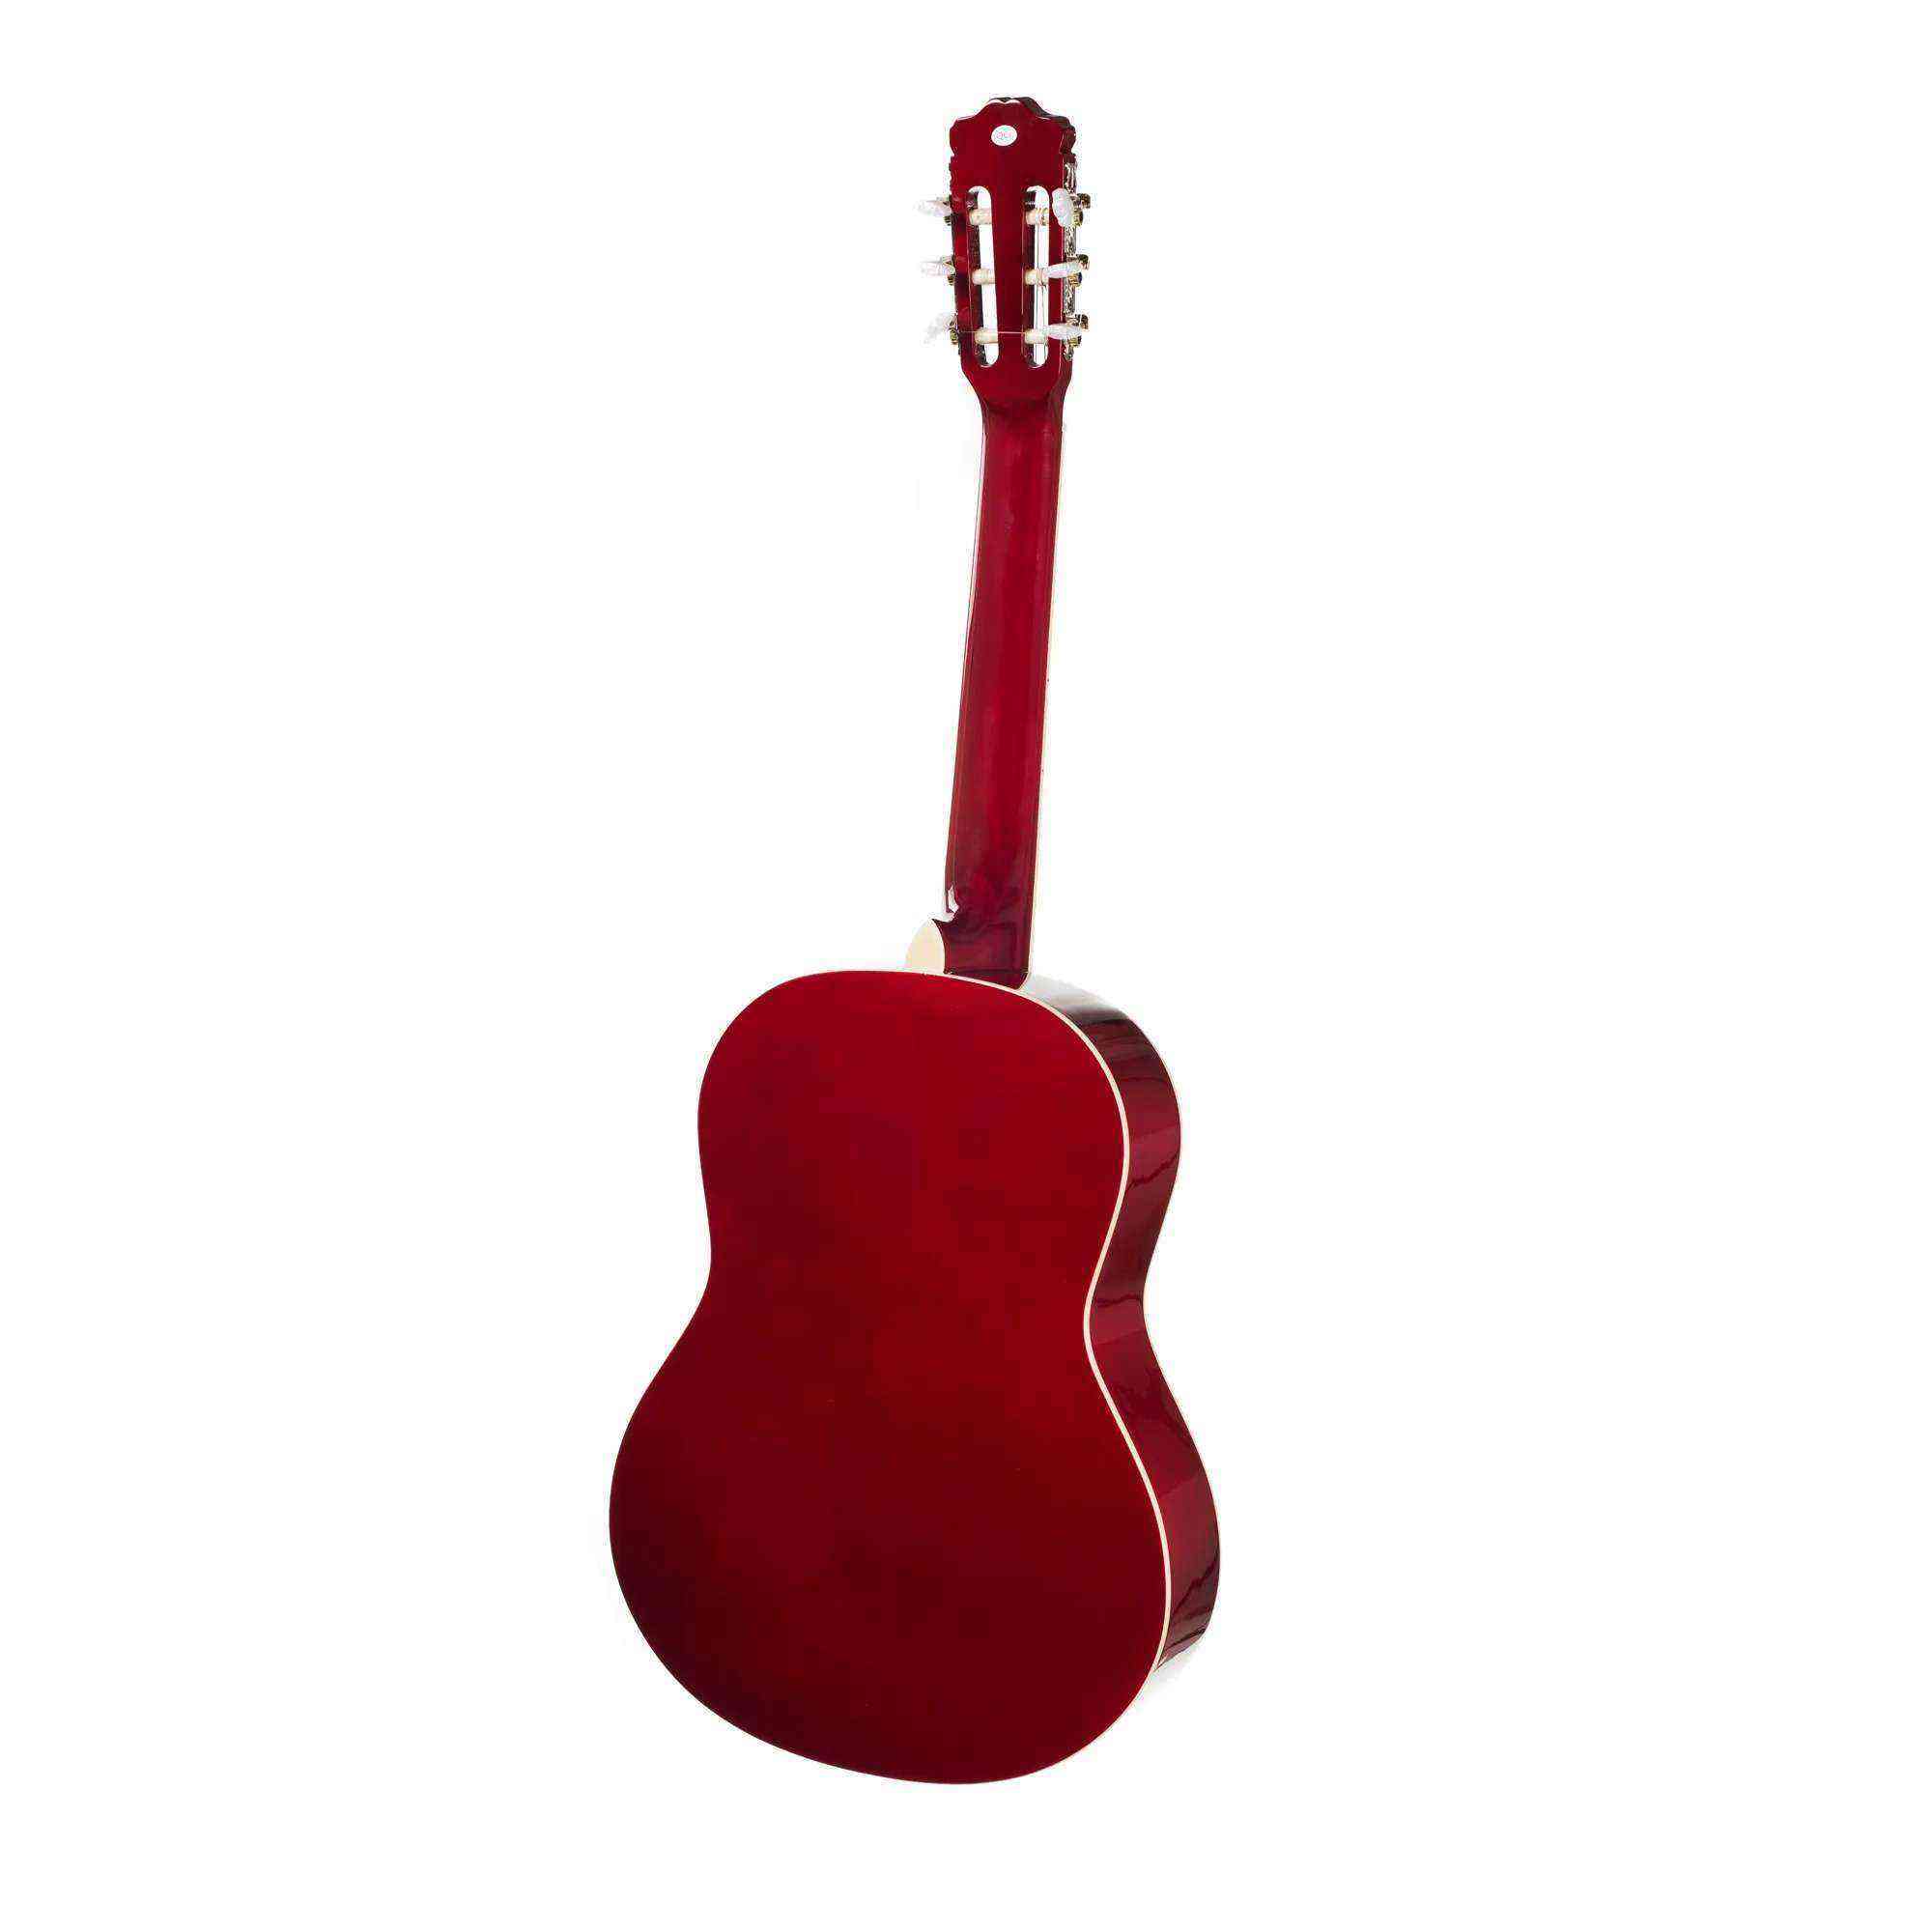 Bolero C1 RDS 3/4 Boy Klasik Gitar- Kırmızı